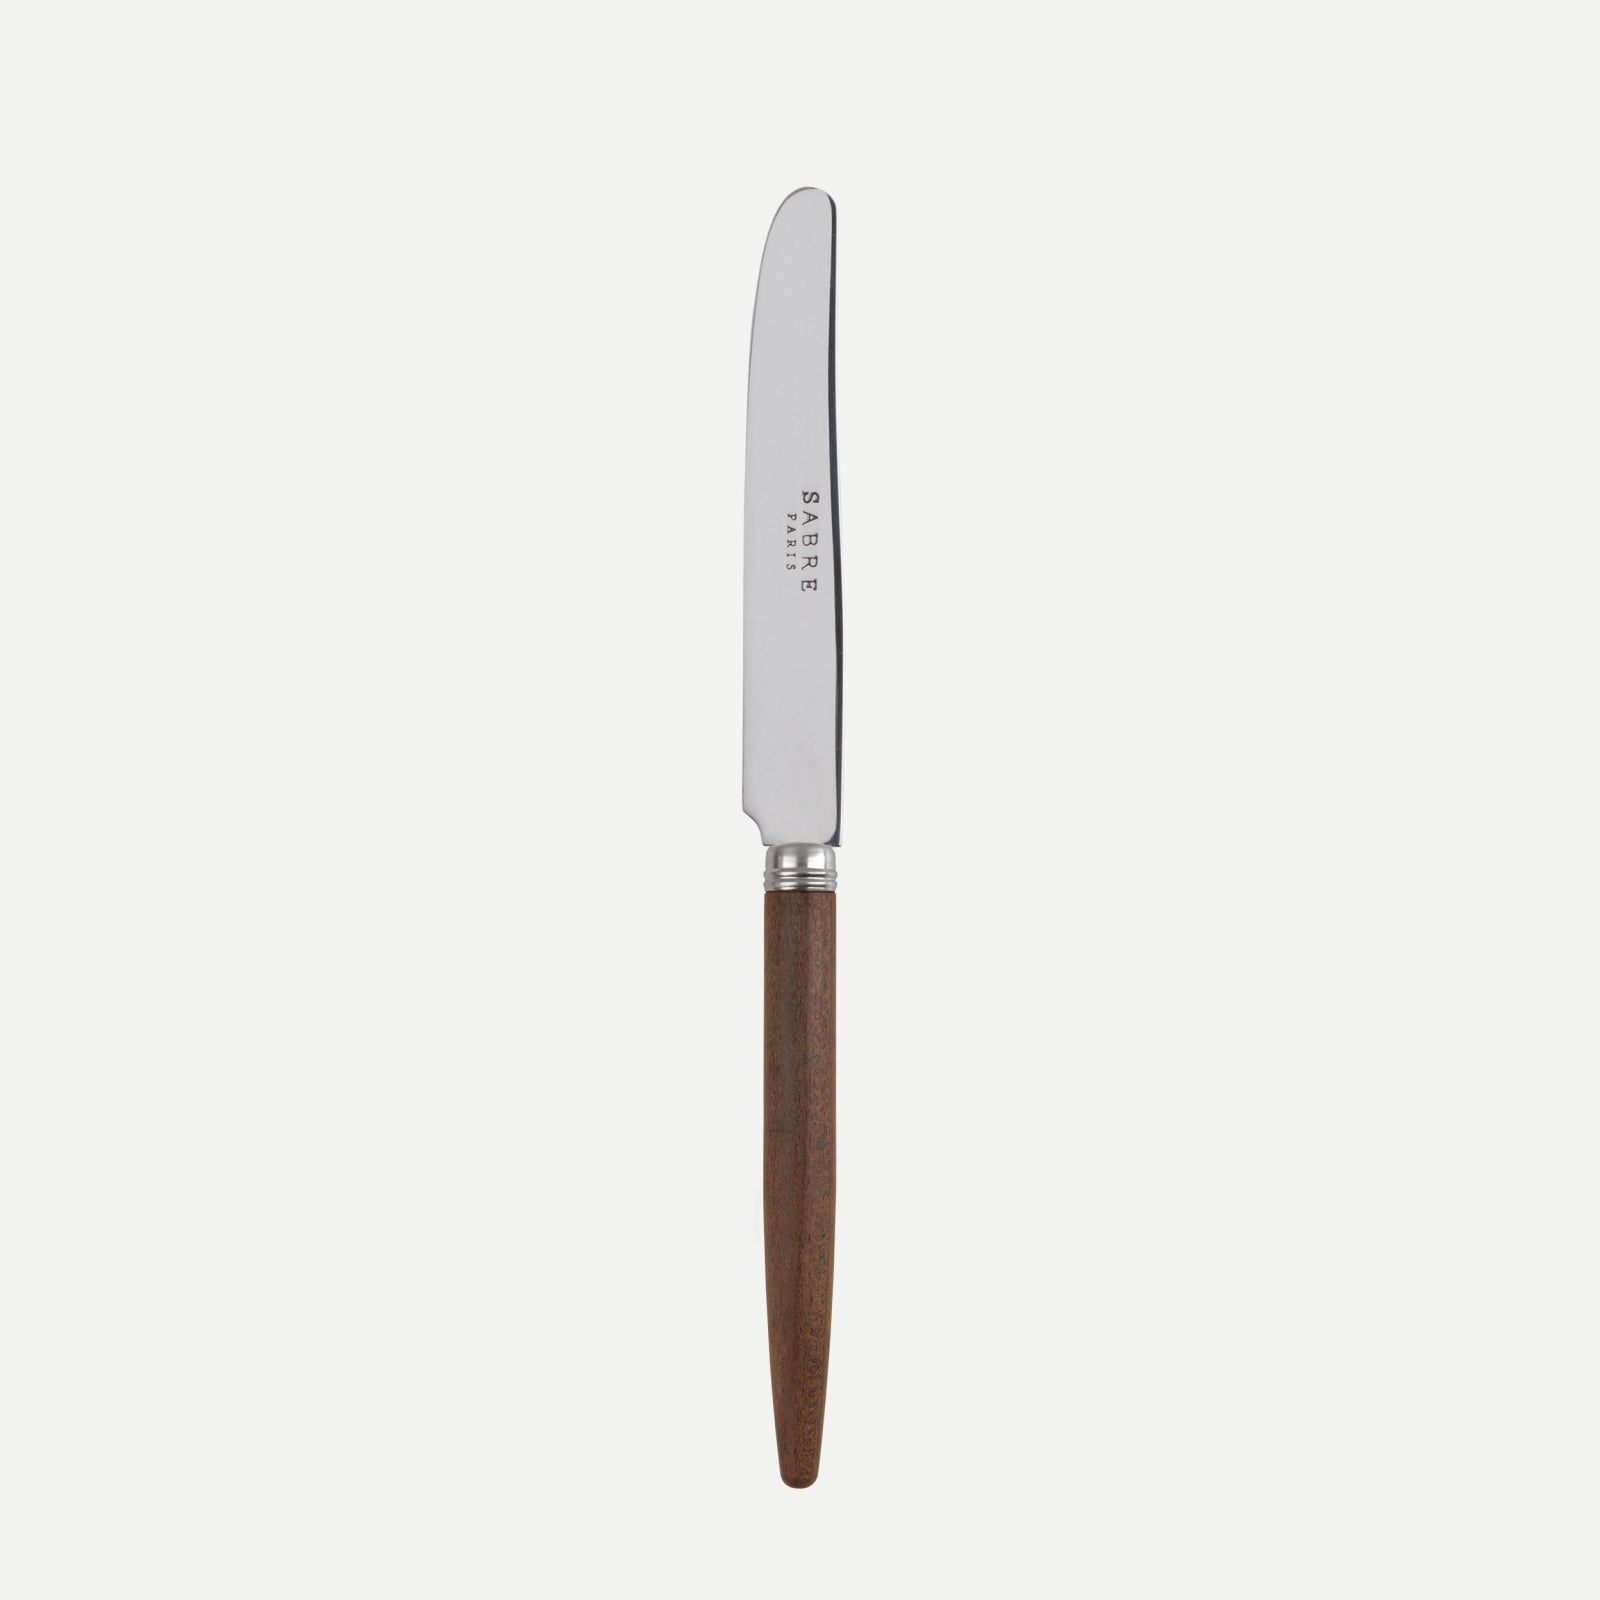 Breakfast knife - Jonc - Dark wood